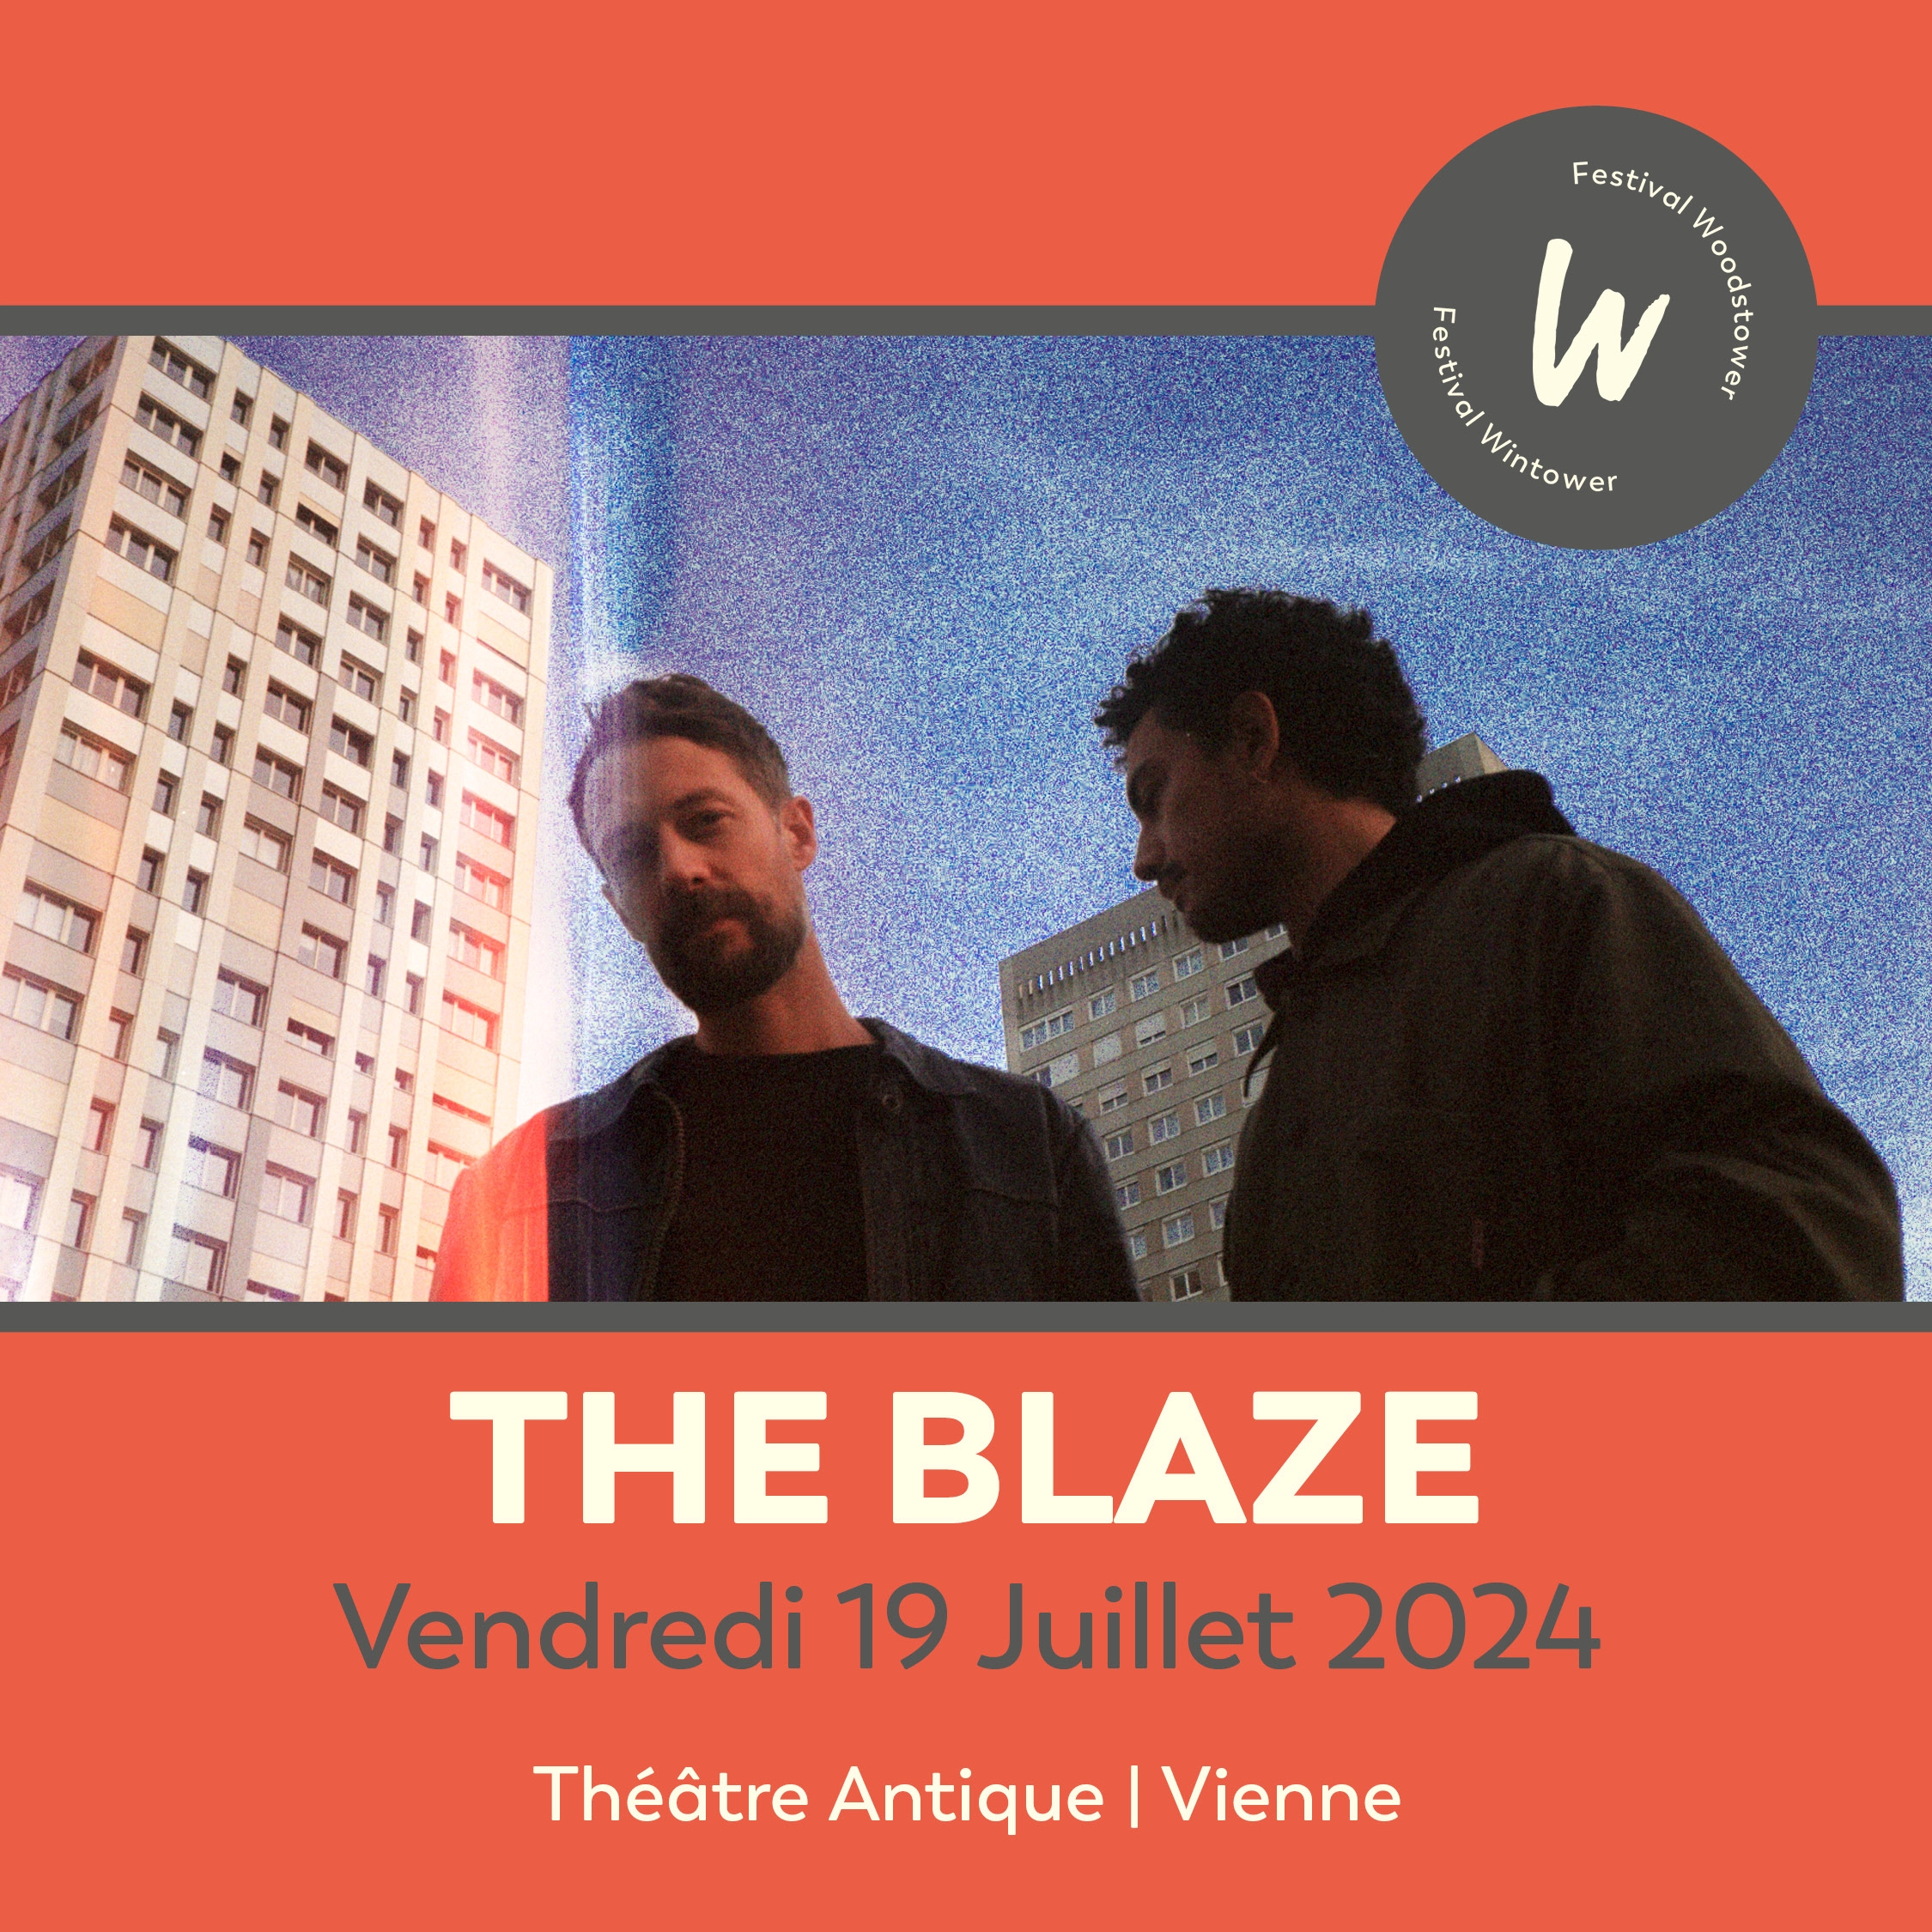 The Blaze in der Theatre Antique Vienne Tickets